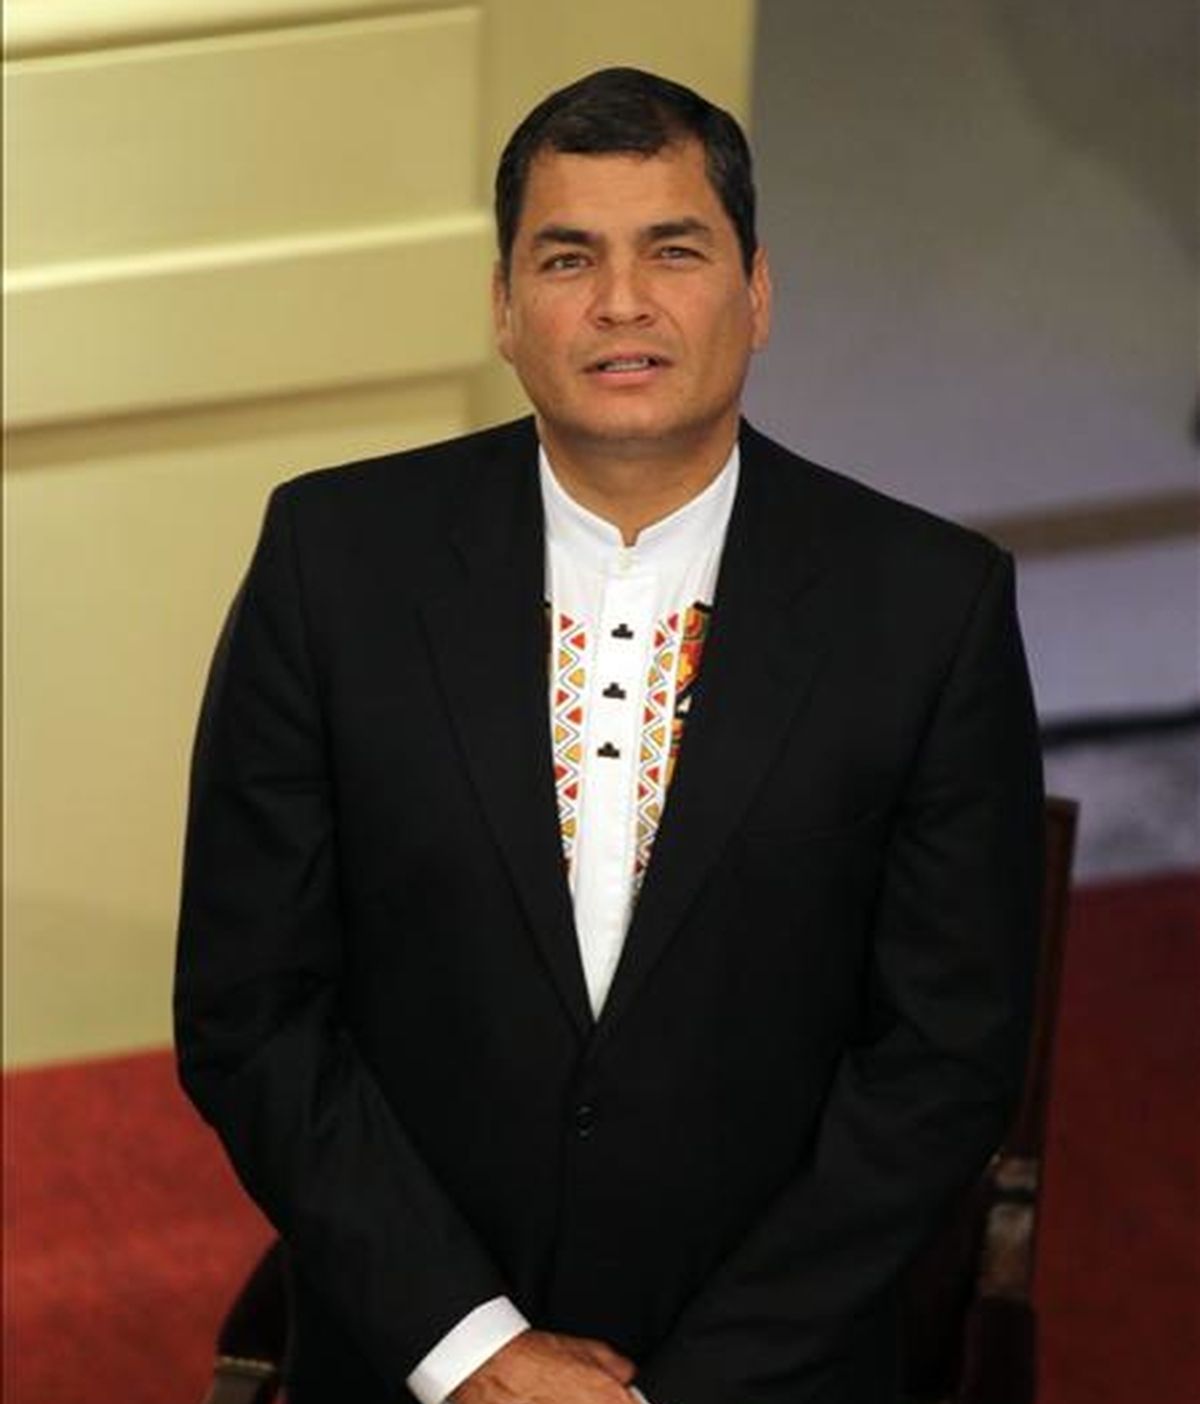 El presidente de Ecuador, Rafael Correa, dijo que aún faltan algunos ajustes en su agenda para ver la posibilidad de asistir a la investidura de Santos, el próximo 7 de agosto. EFE/Archivo